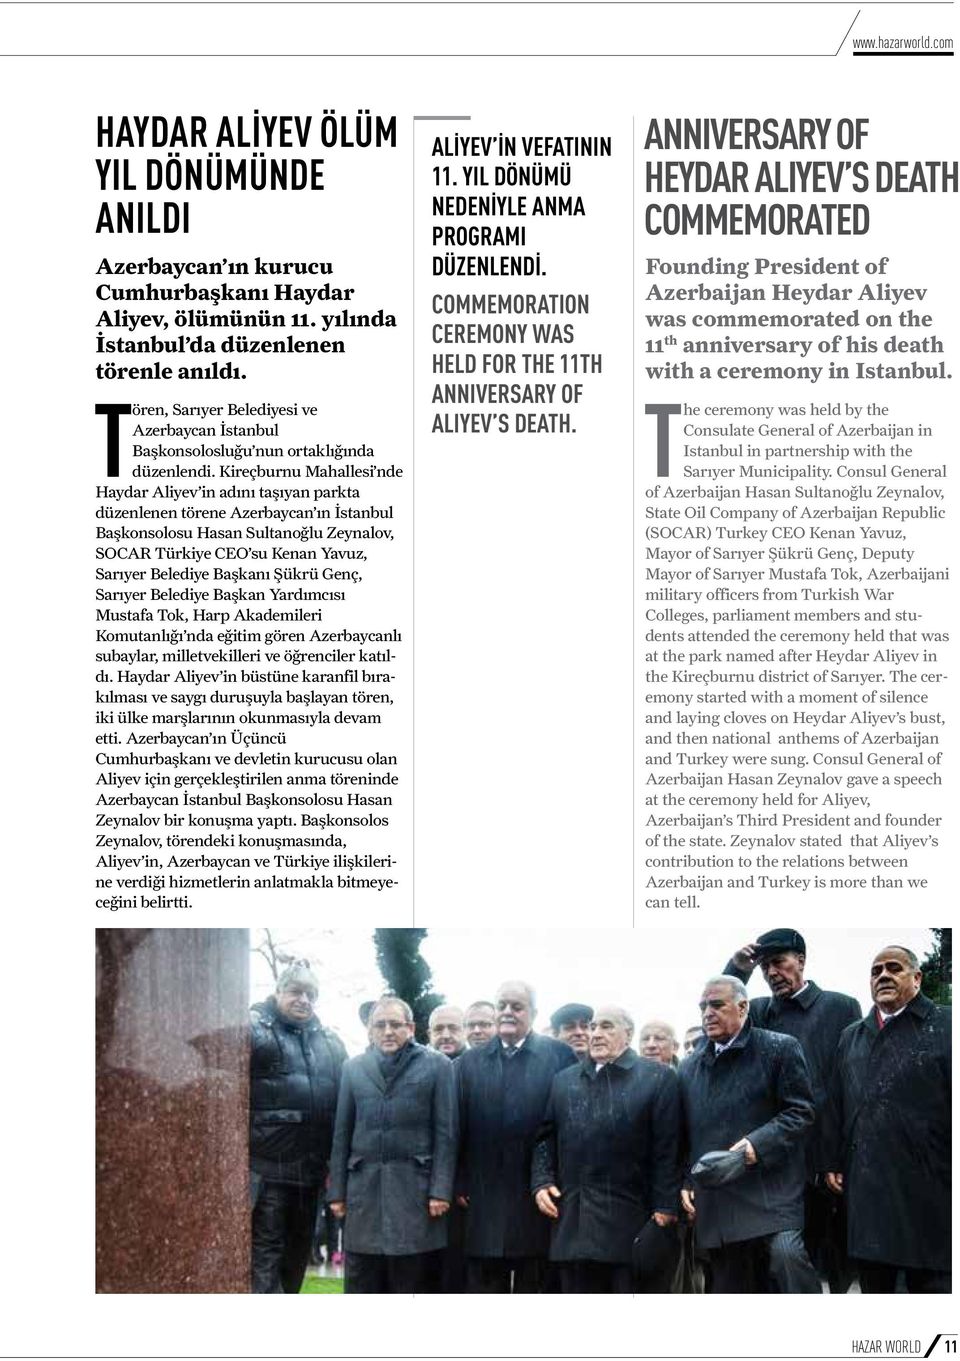 Kireçburnu Mahallesi nde Haydar Aliyev in adını taşıyan parkta düzenlenen törene Azerbaycan ın İstanbul Başkonsolosu Hasan Sultanoğlu Zeynalov, SOCAR Türkiye CEO su Kenan Yavuz, Sarıyer Belediye